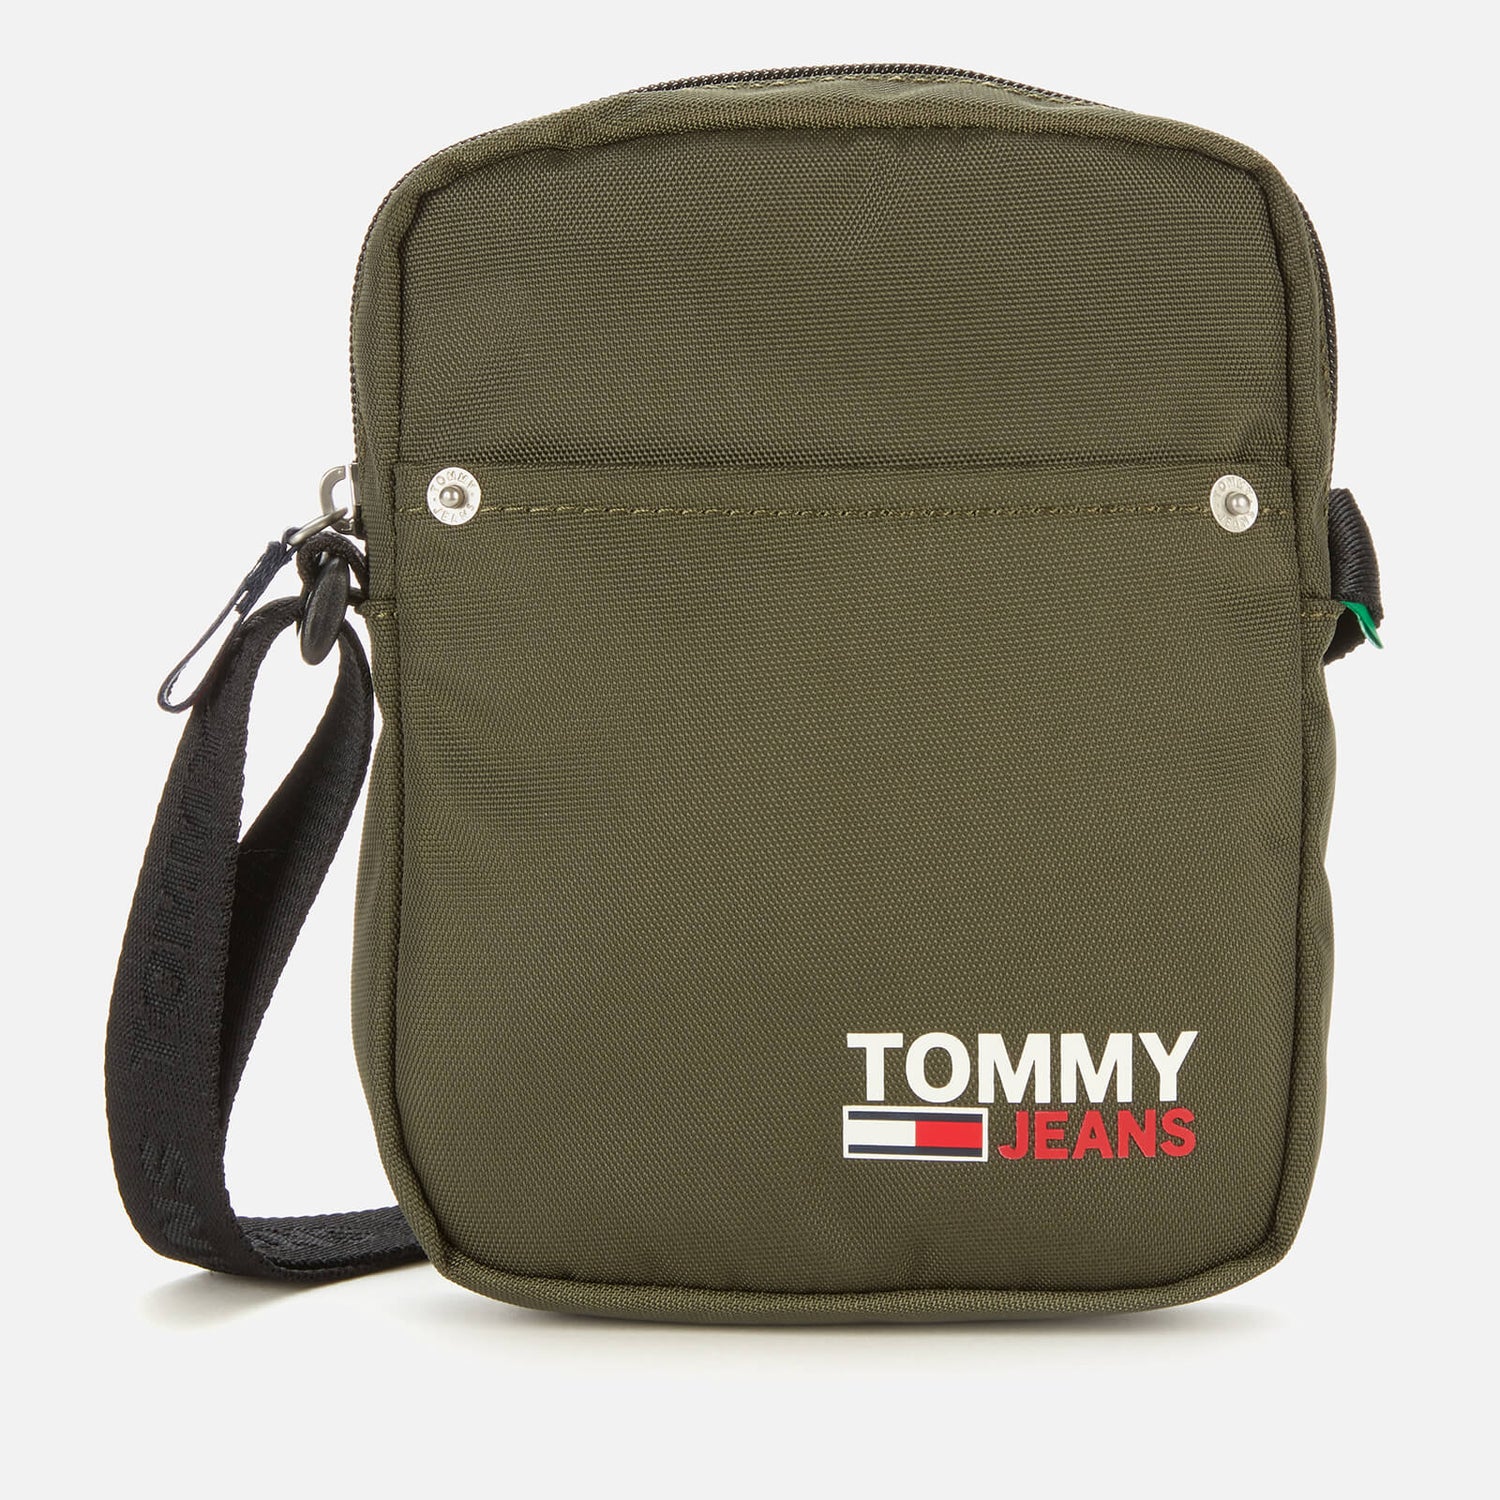 Tommy Jeans Men's Campus Reporter Bag - Dark Olive